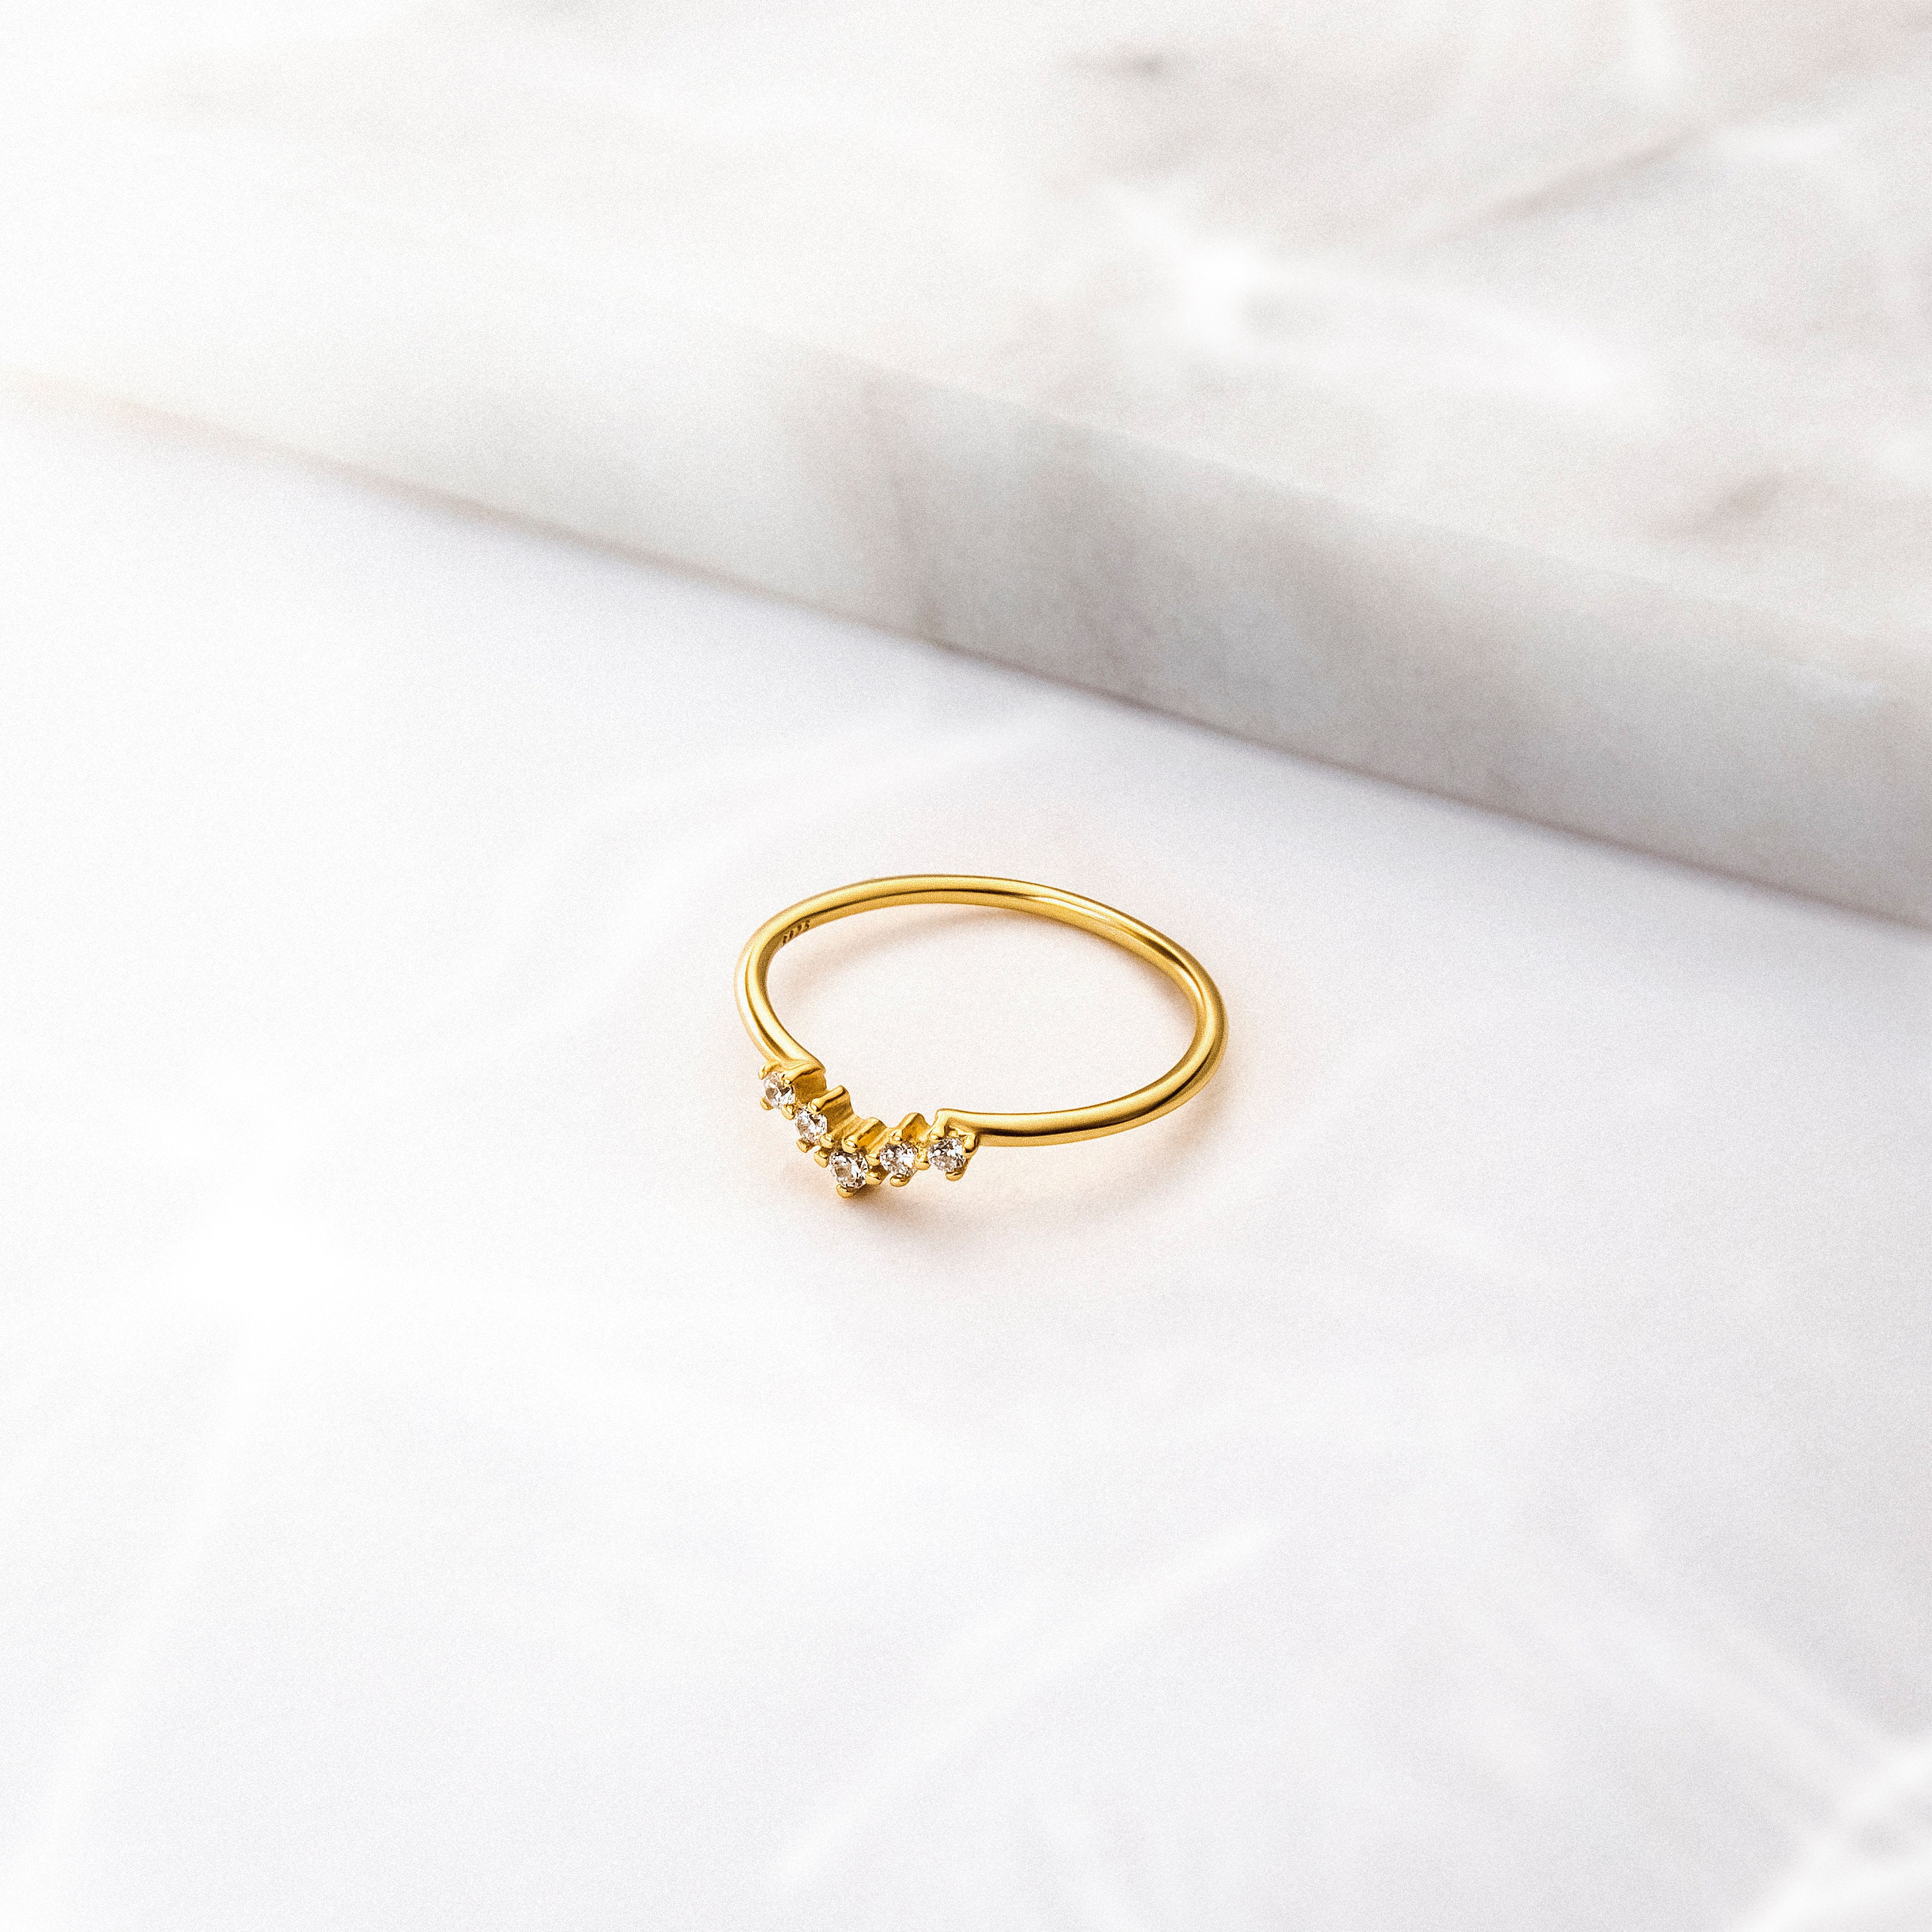 Chevron Ring Dainty Cz Ring Cz Gold Ring Minimal Ring | Etsy